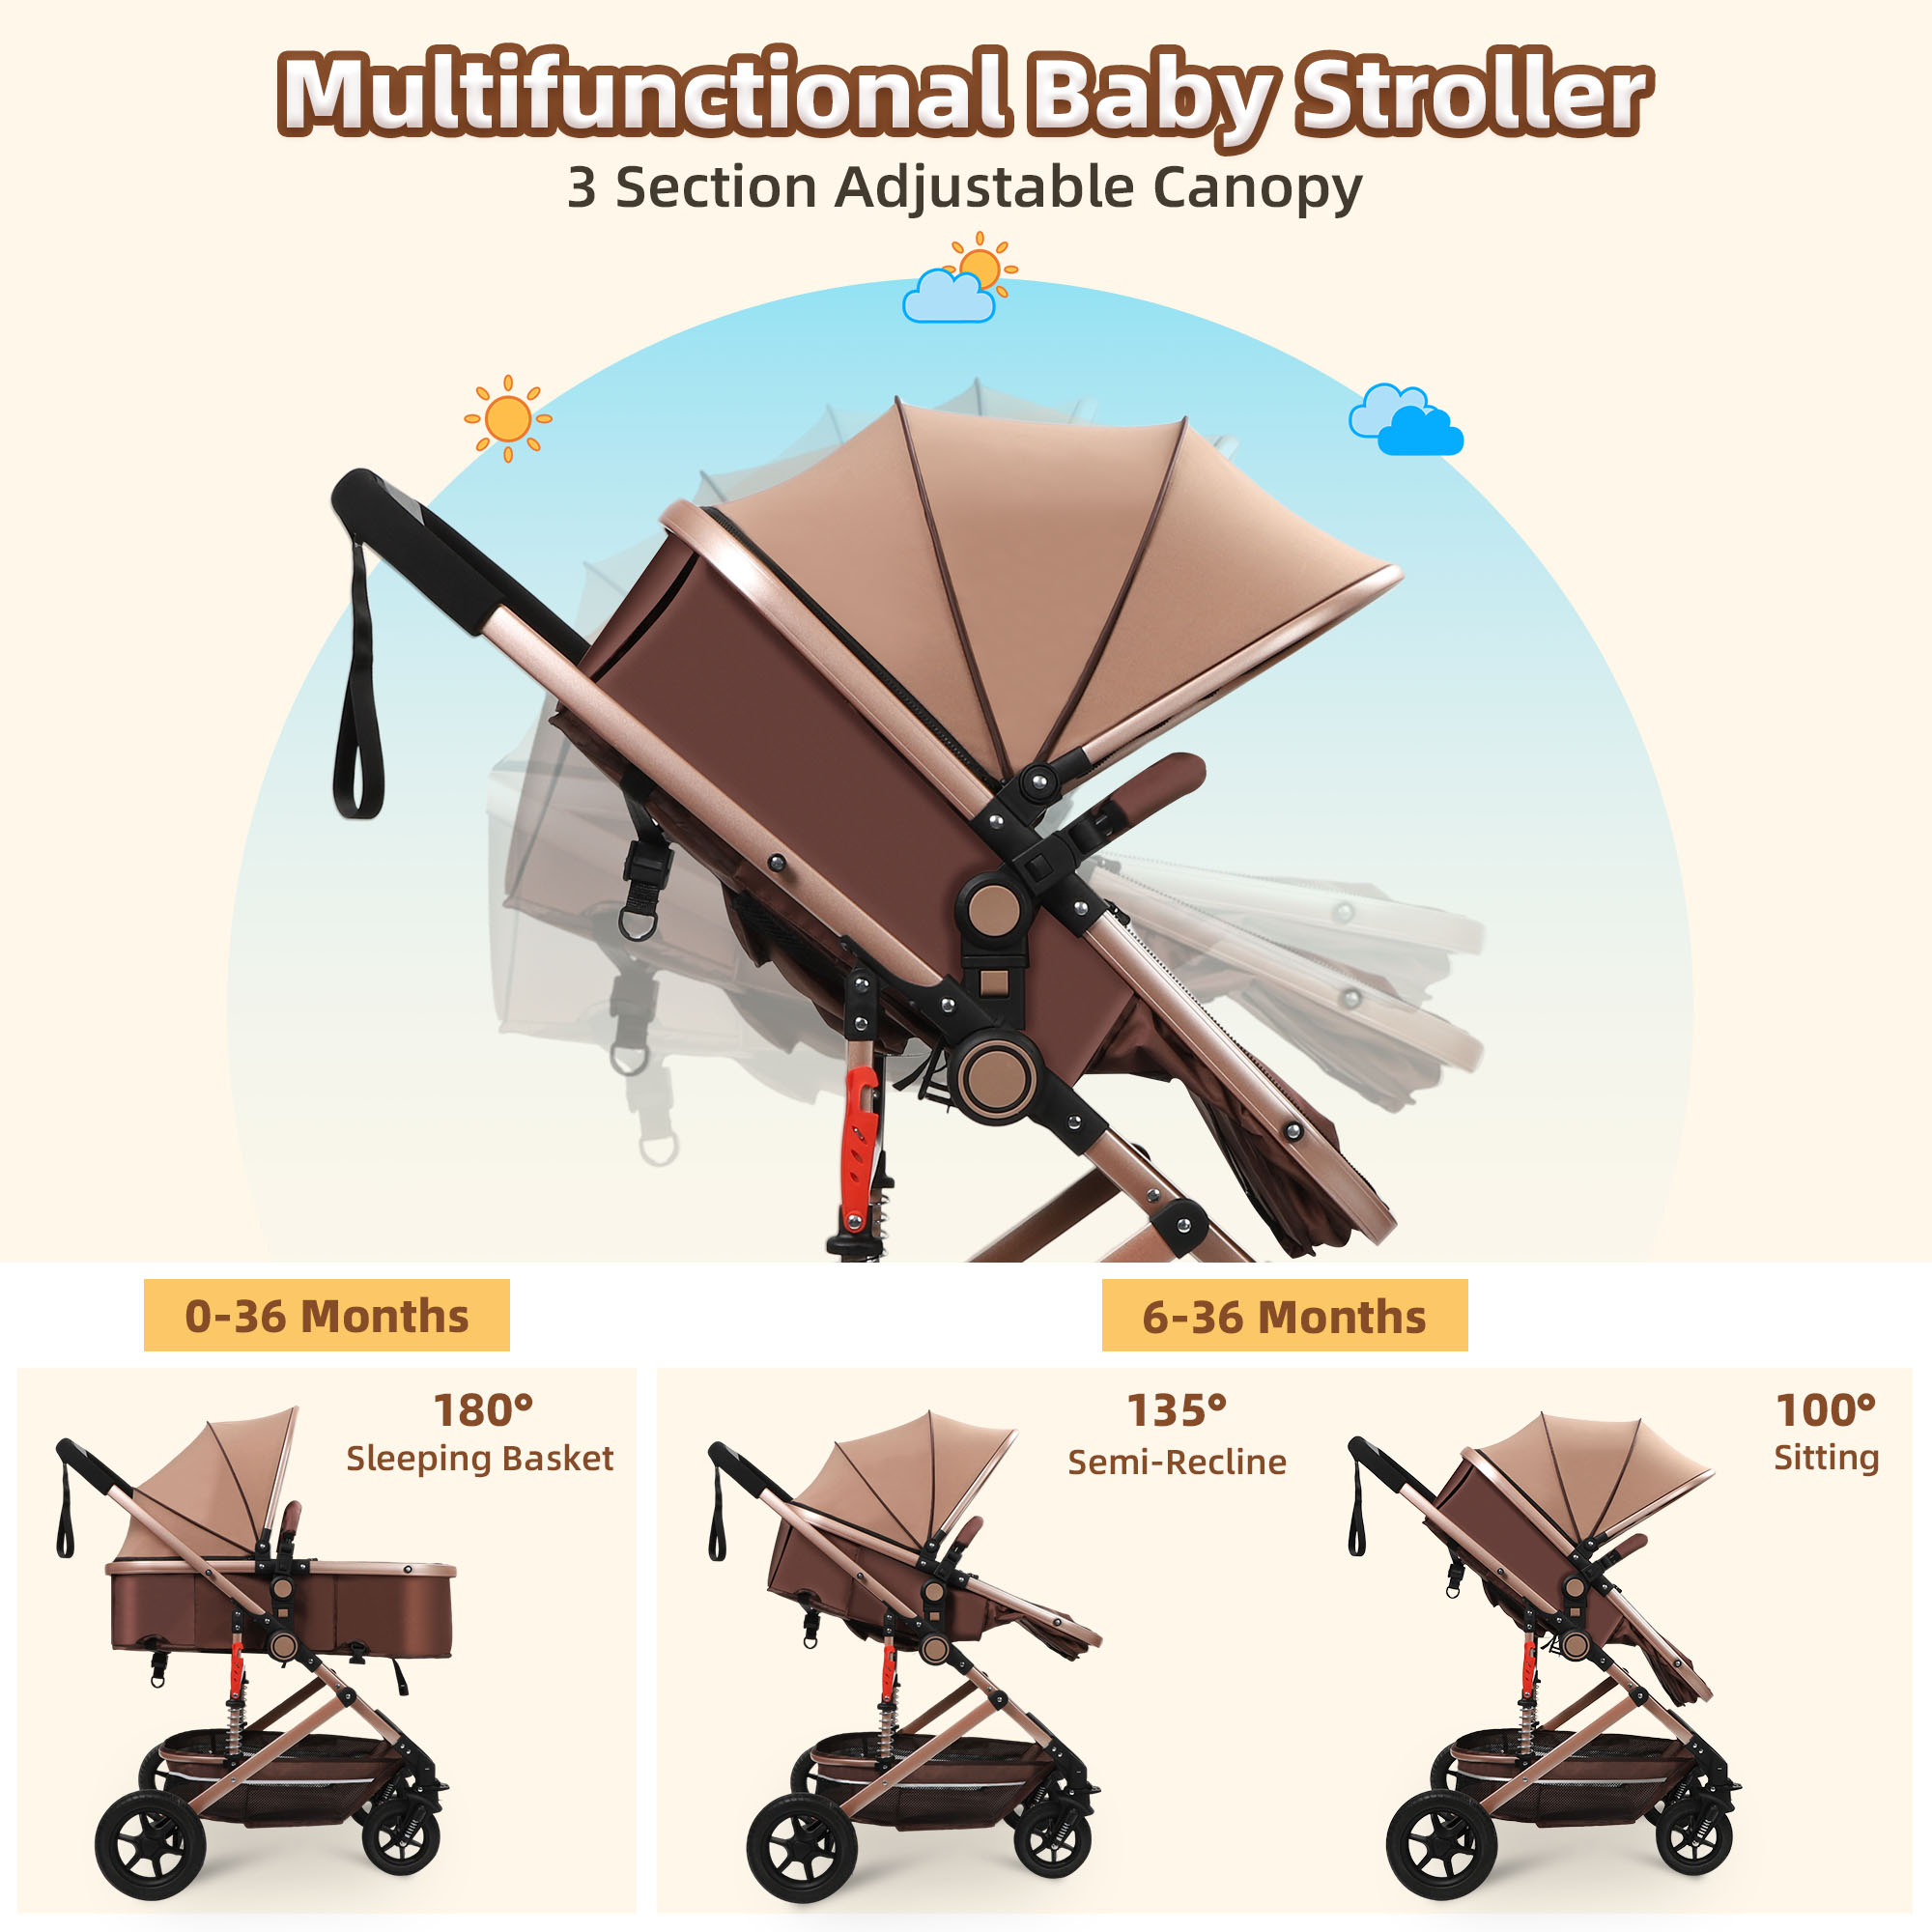 Vomeast Baby Stroller, Foldable Baby Stroller Reversible Bassinet, Travel Stroller for Newborn Baby, Khaki - image 5 of 10